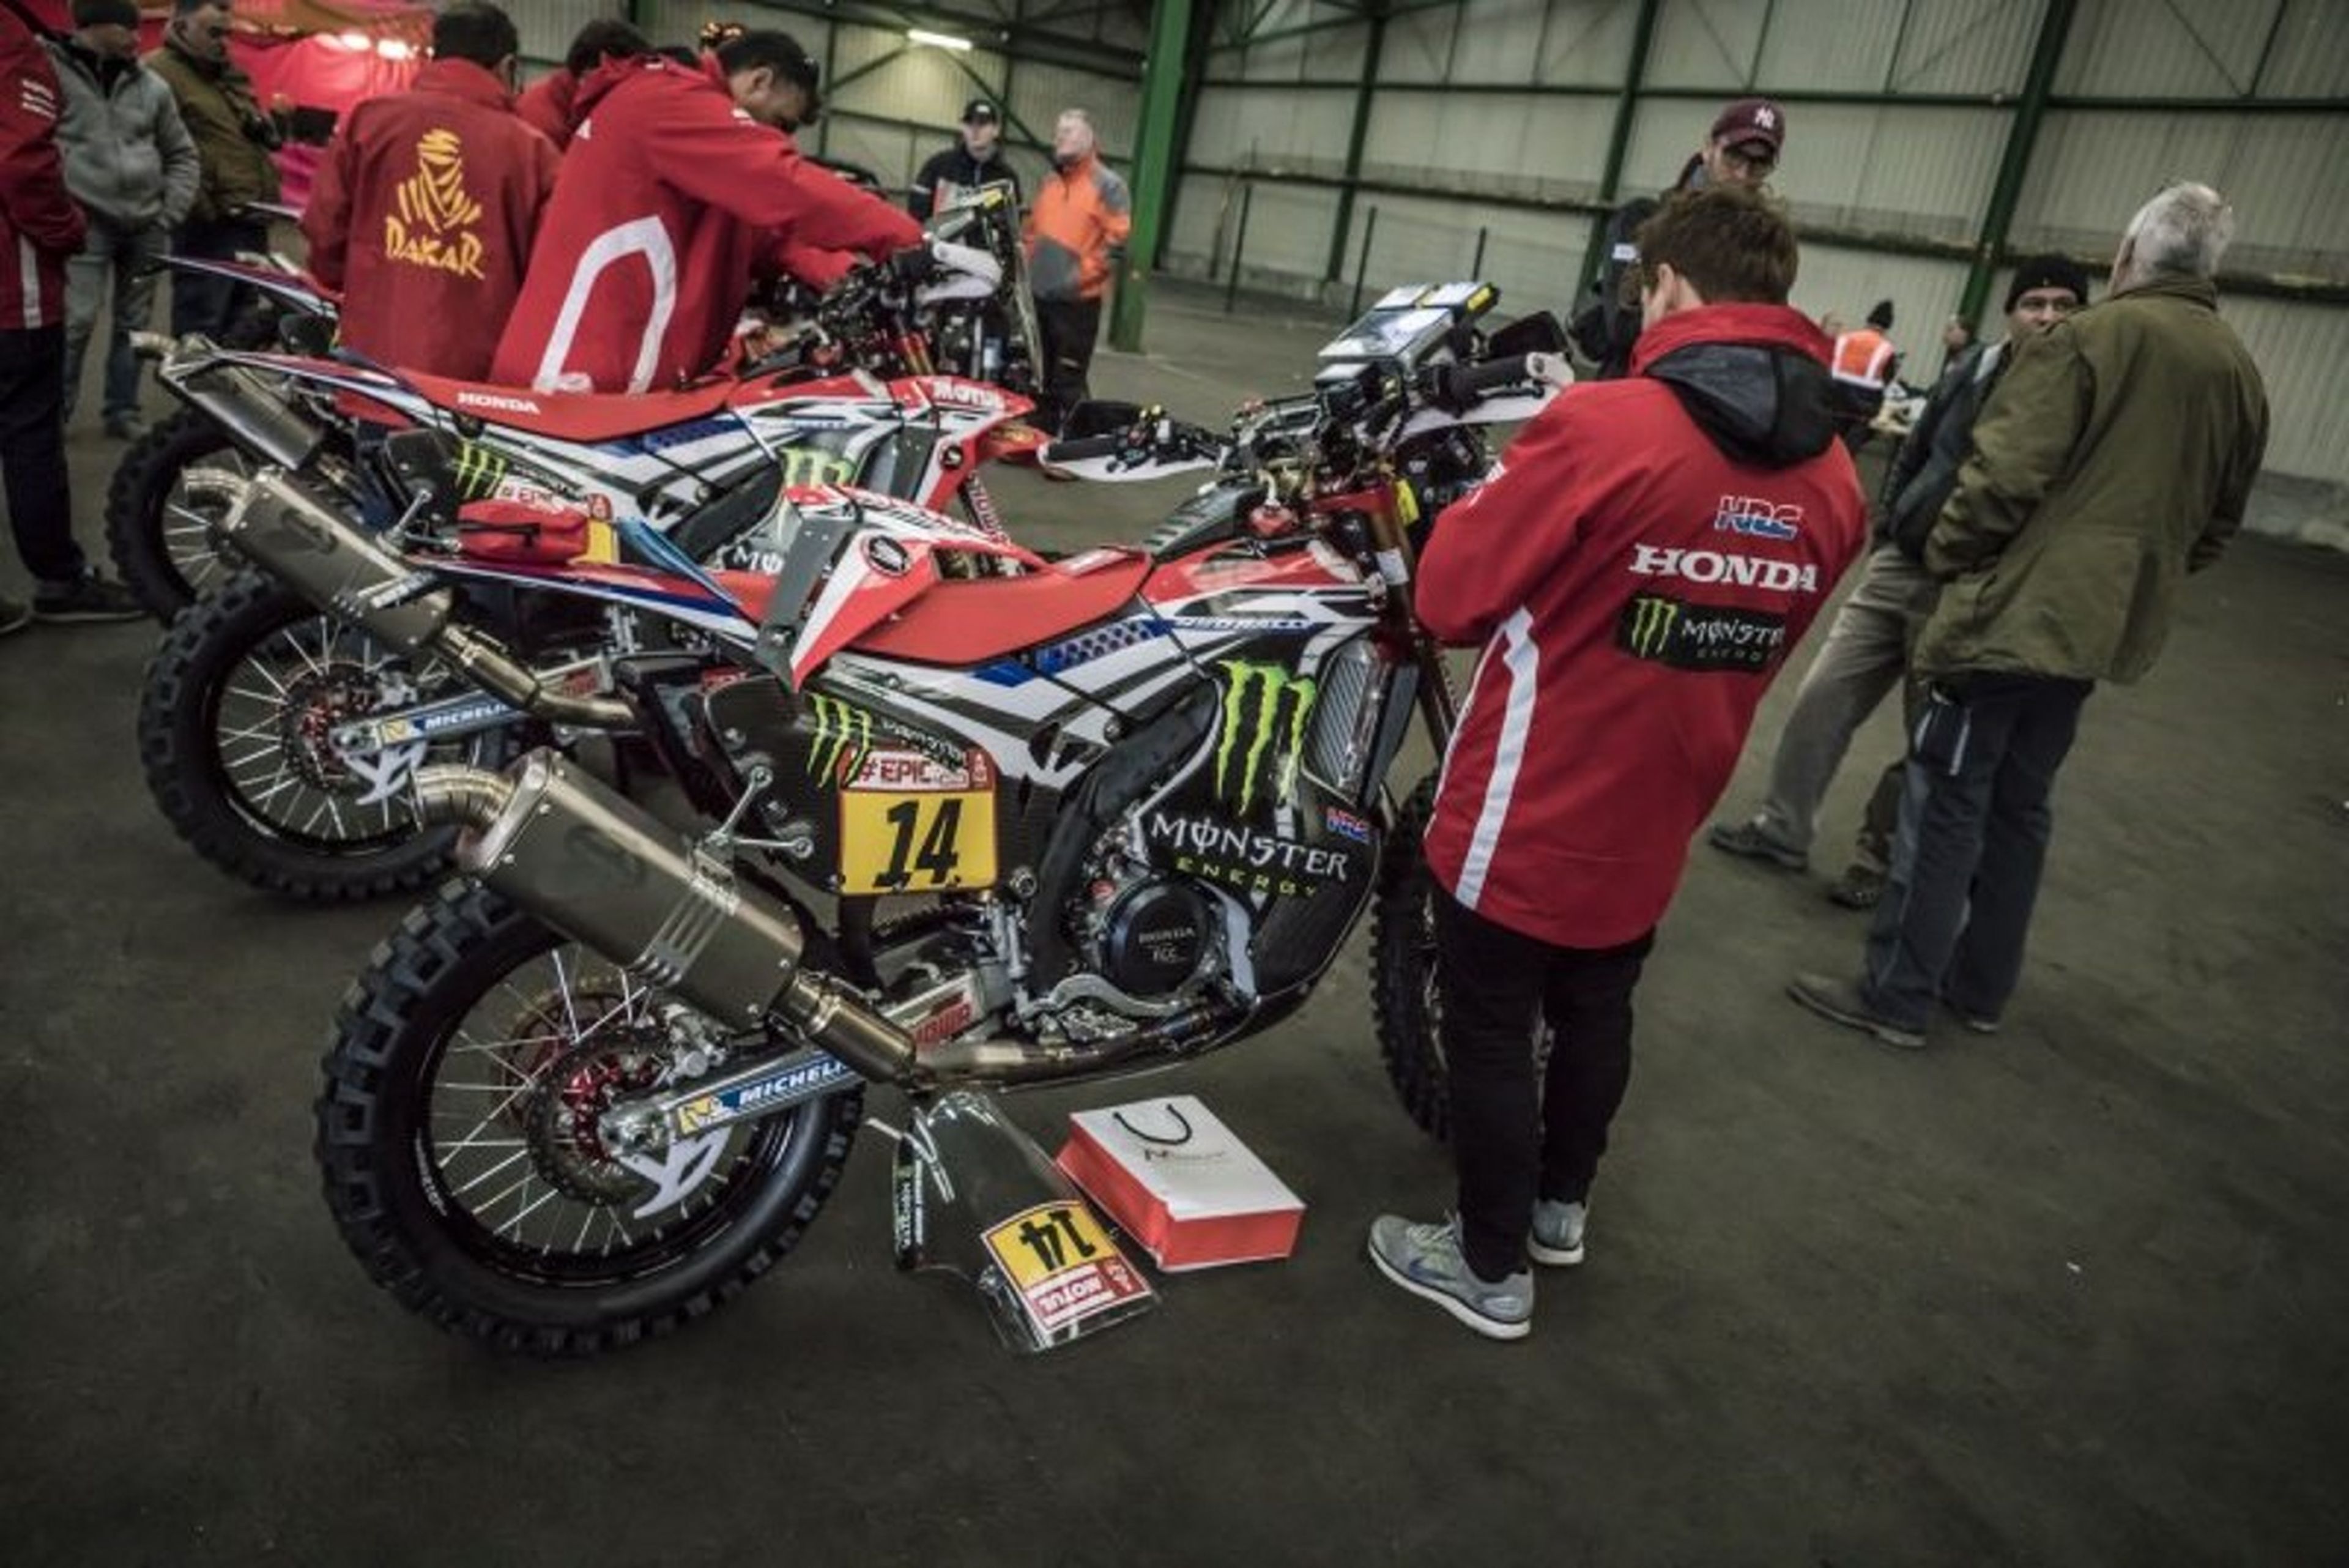 Una de las motos del equipo oficial Honda en el Rally Dakar 2018 ha sido robada